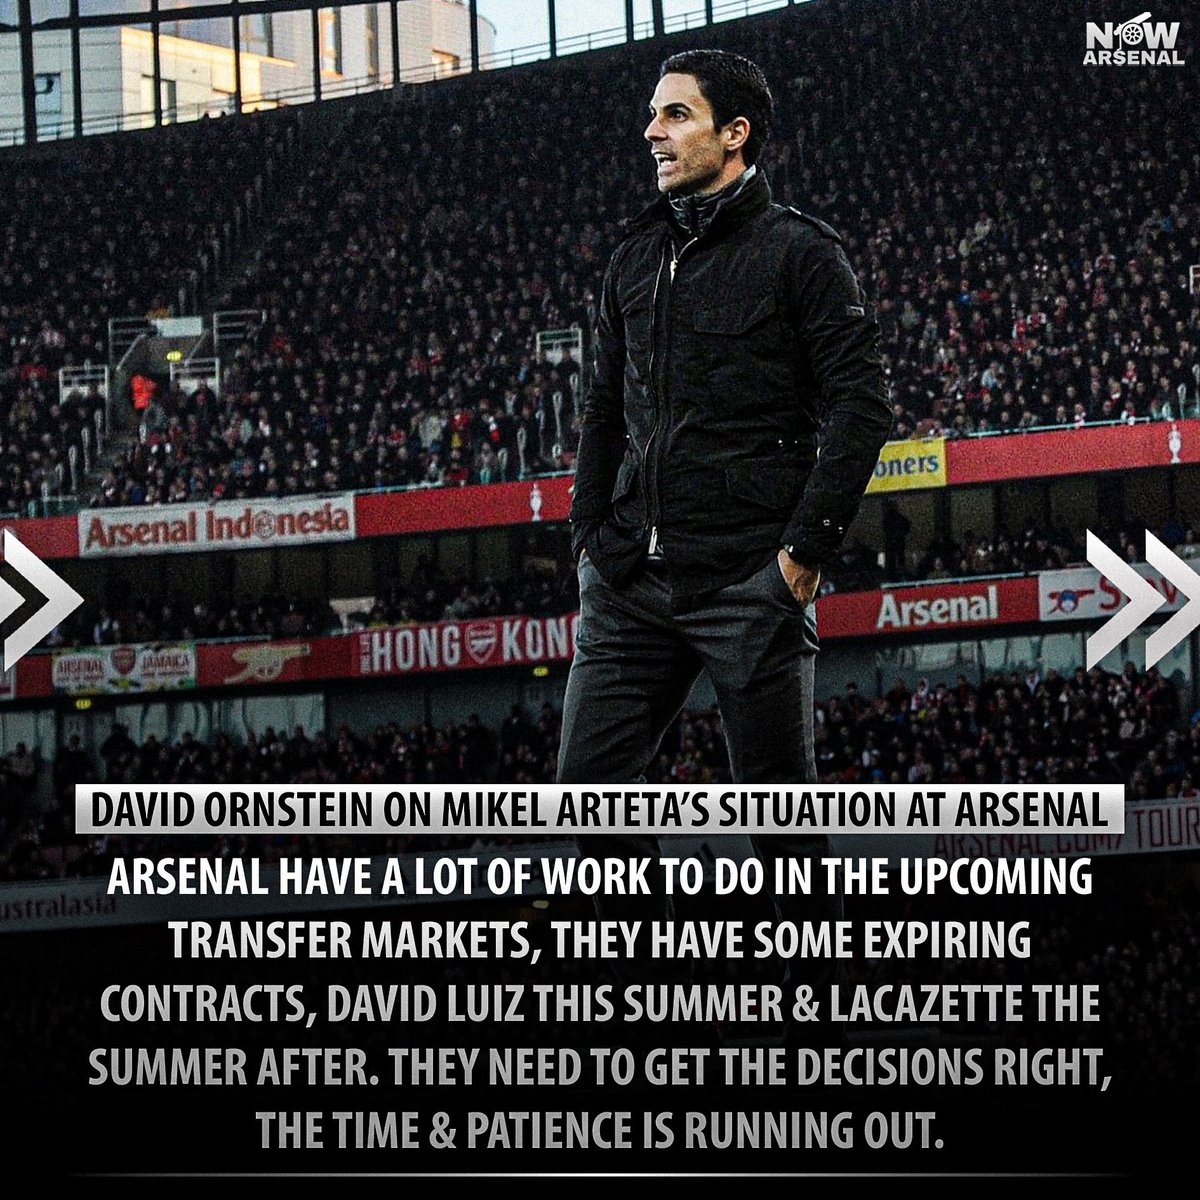  @David_Ornstein on Mikel Arteta’s future & next season at Arsenal...